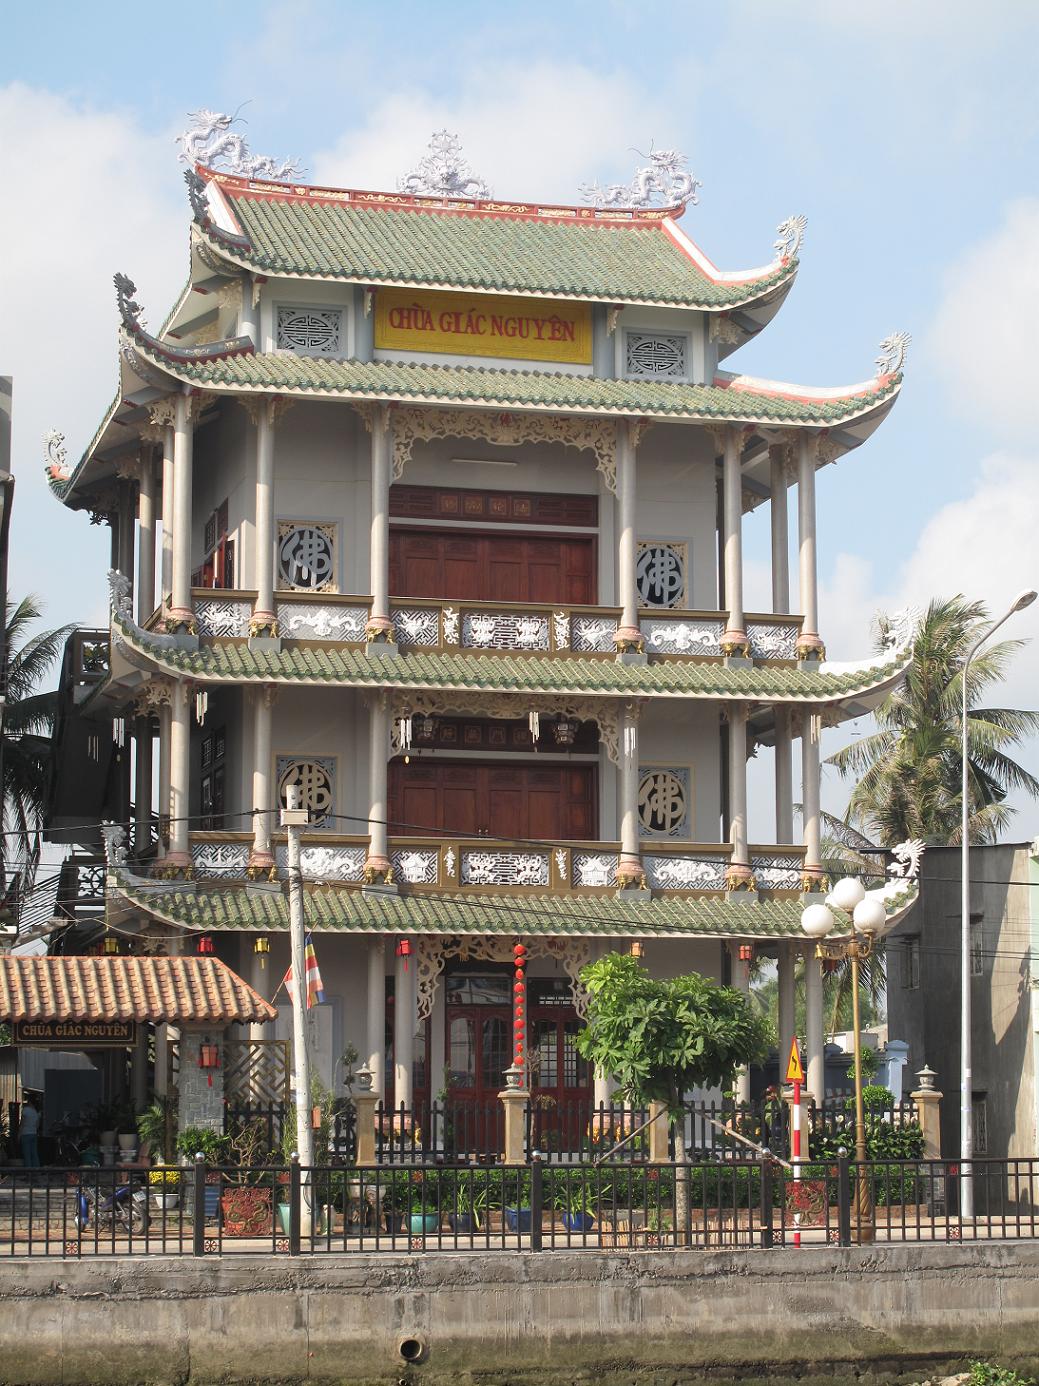 Giac Nguyen pagoda